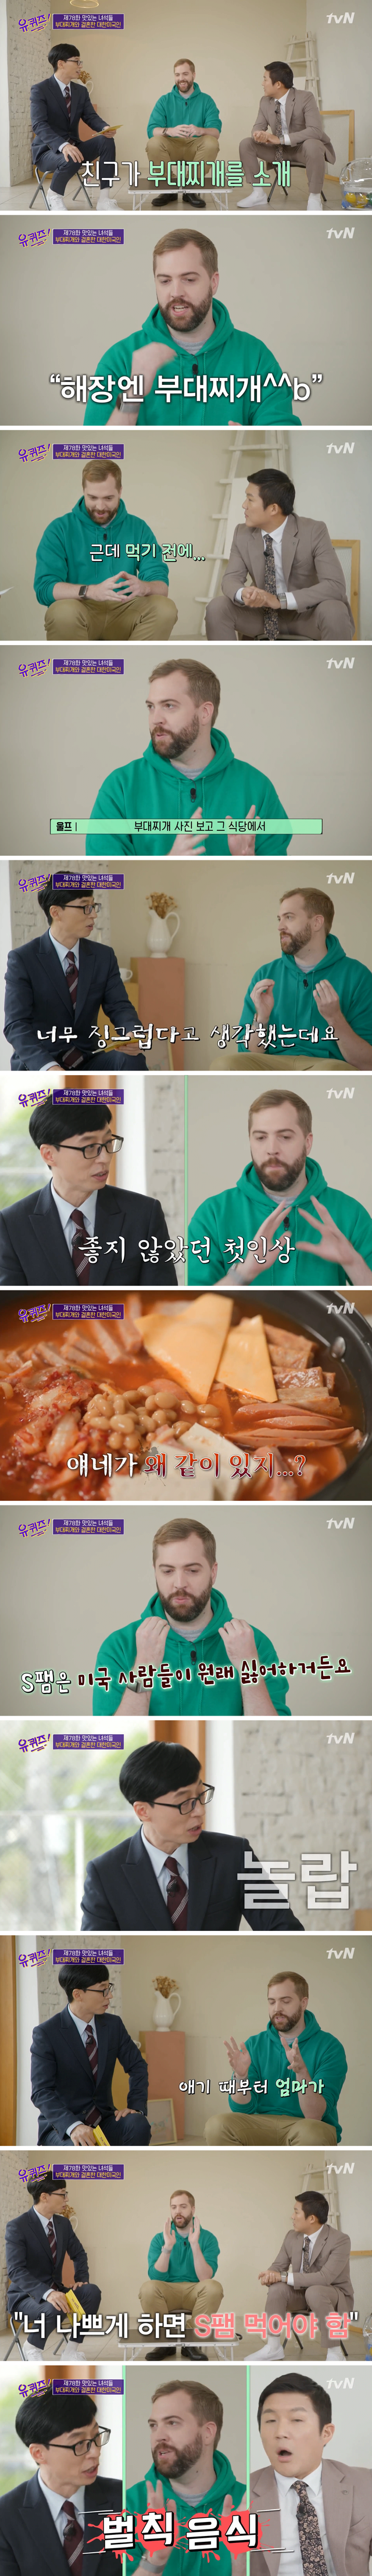 [유퀴즈] 한국 식당에서 스팸 보고 식겁한 미국인 - 꾸르